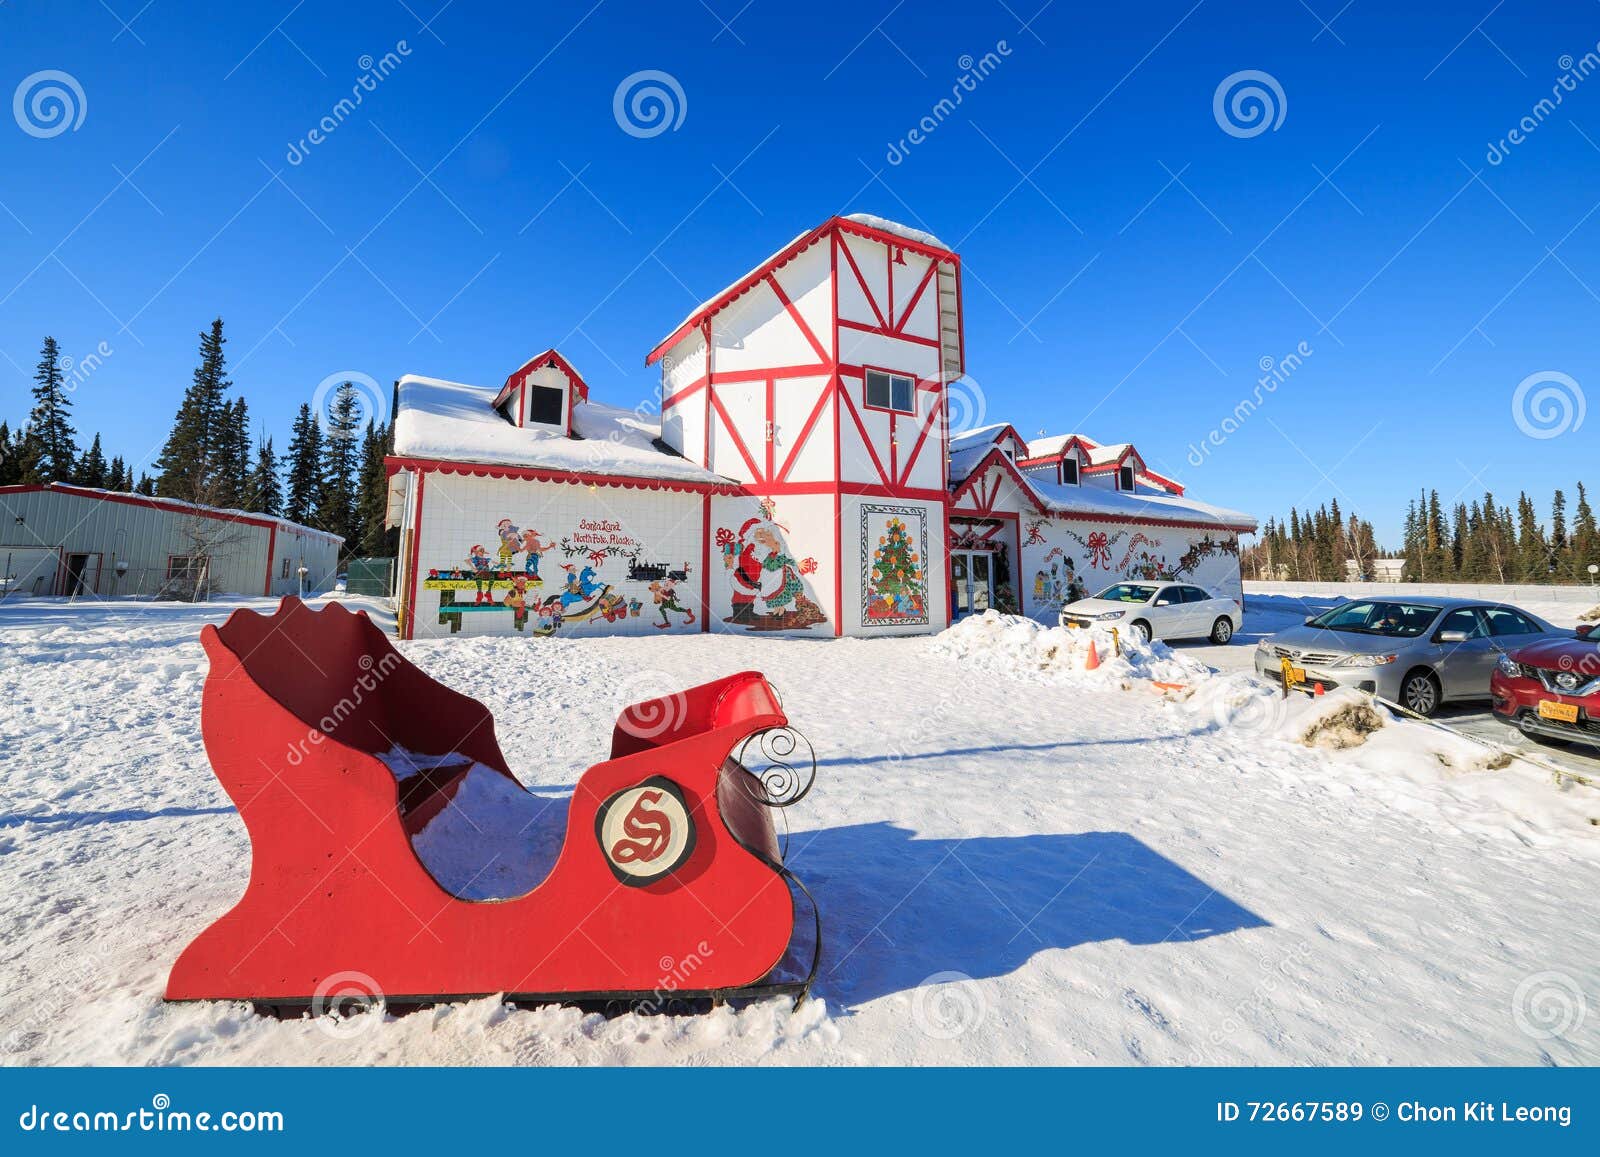 Polo Nord Villaggio Di Babbo Natale.Casa Del Babbo Natale Polo Nord Immagine Stock Editoriale Immagine Di Dichiara North 72667589